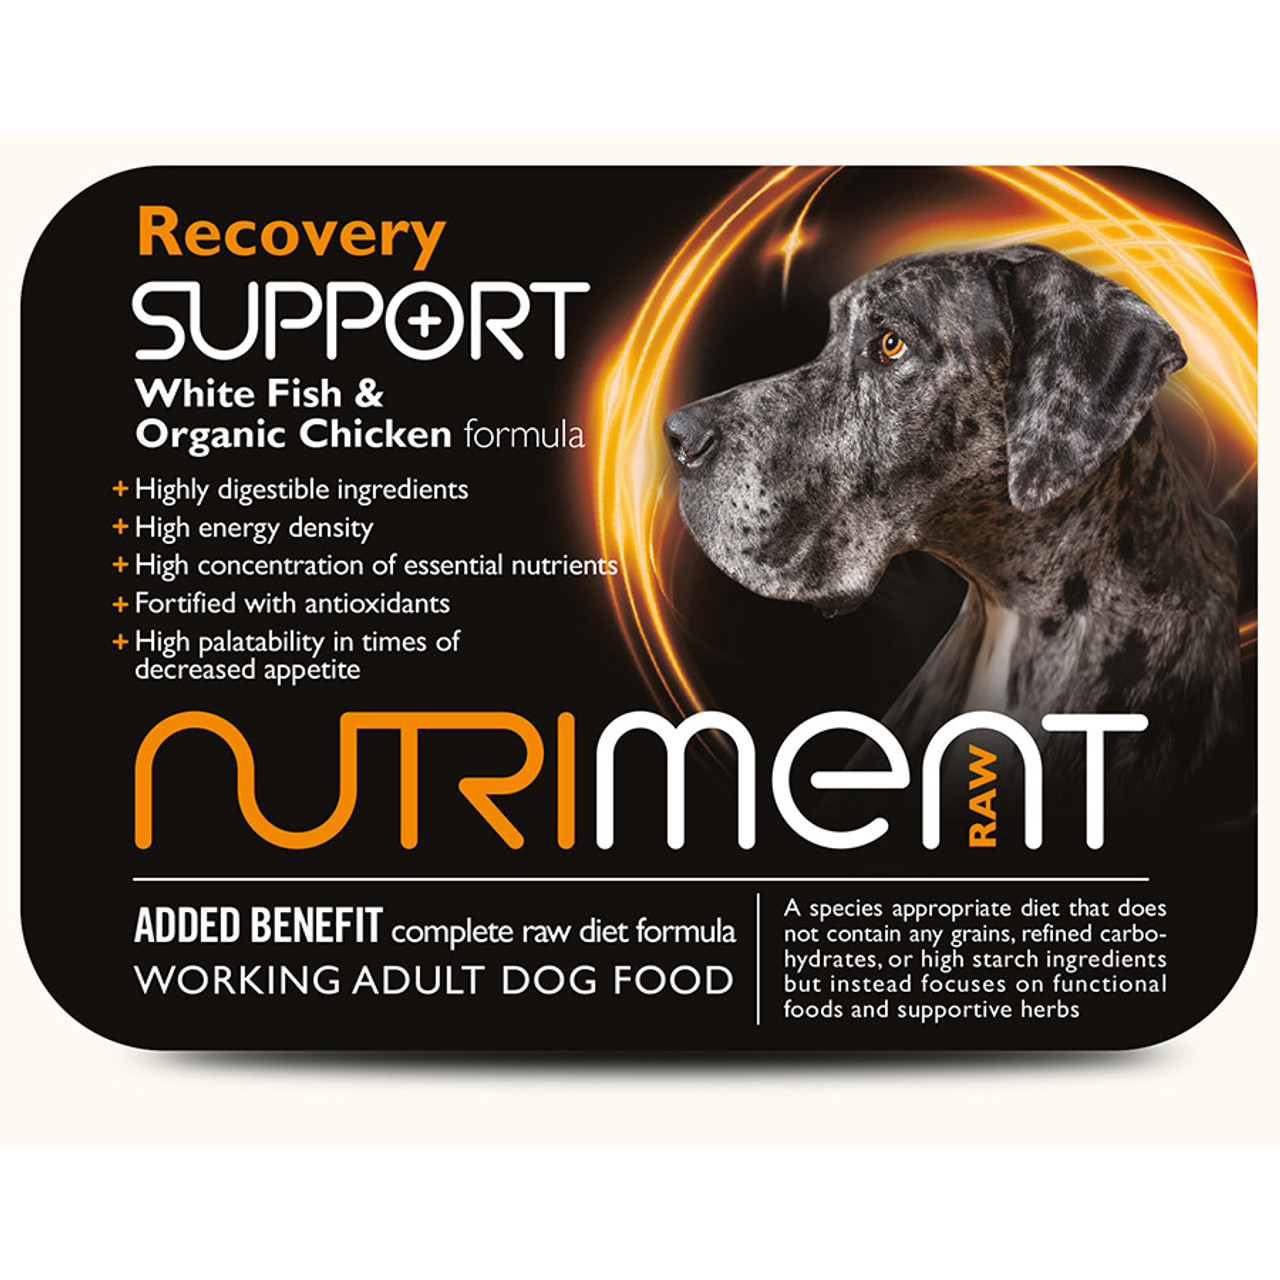 nutriment dog food